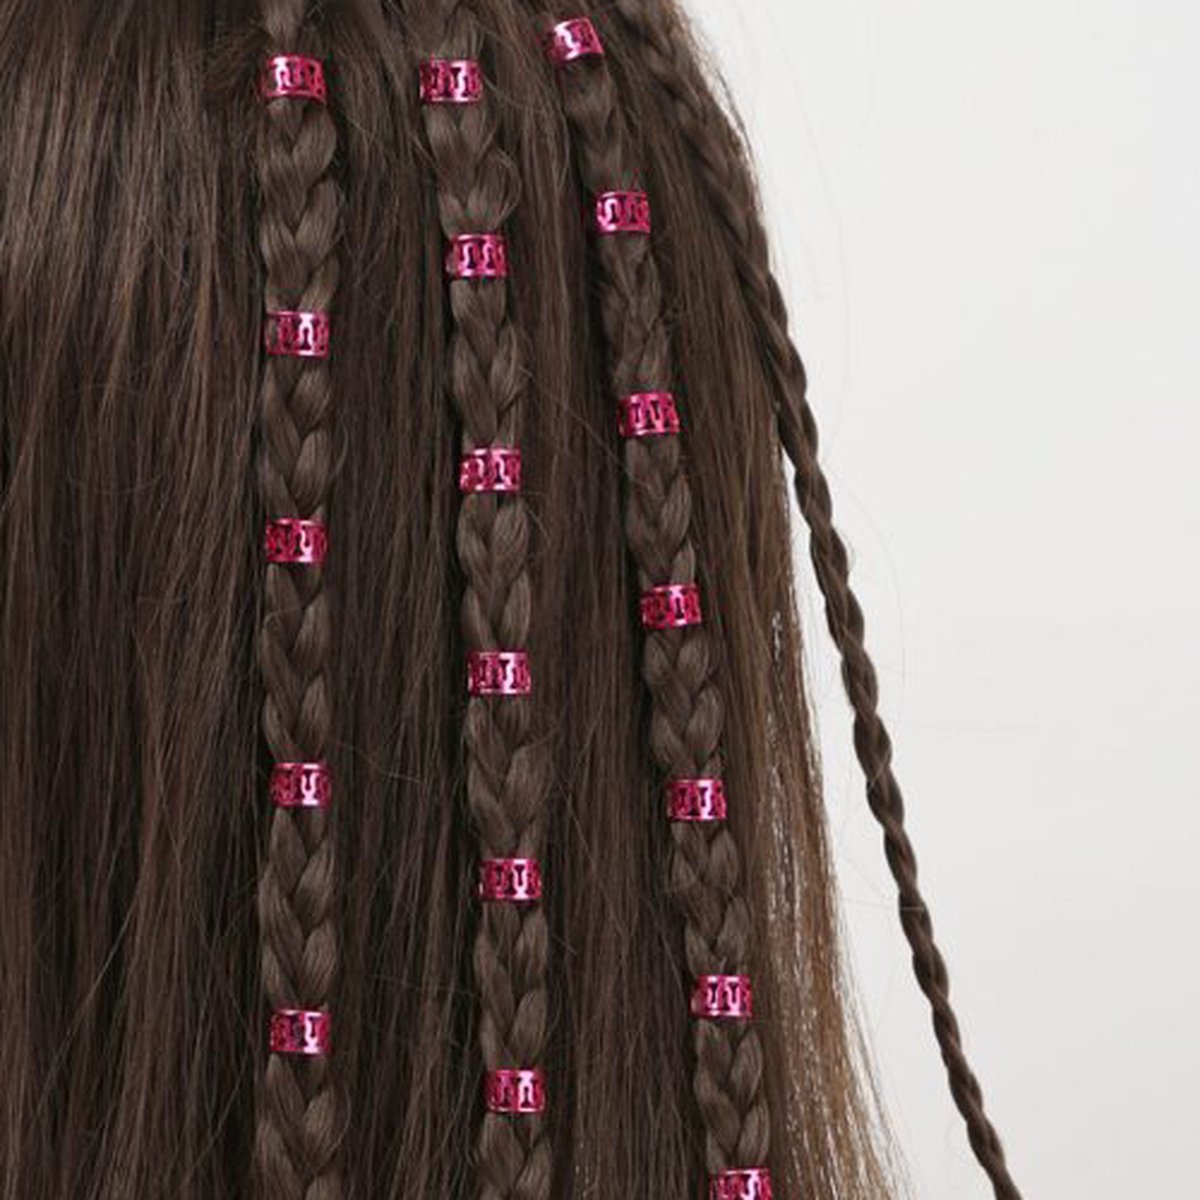 Haar Ringen Vlechten Roze (40 stuks) - Haar Kralen - Haarringen dreadlock kralen - Kraaltjes / Clips - Haar Accessoires Vrouwen - Vlecht accessoires - Hair Beads Pink - 40 stuks